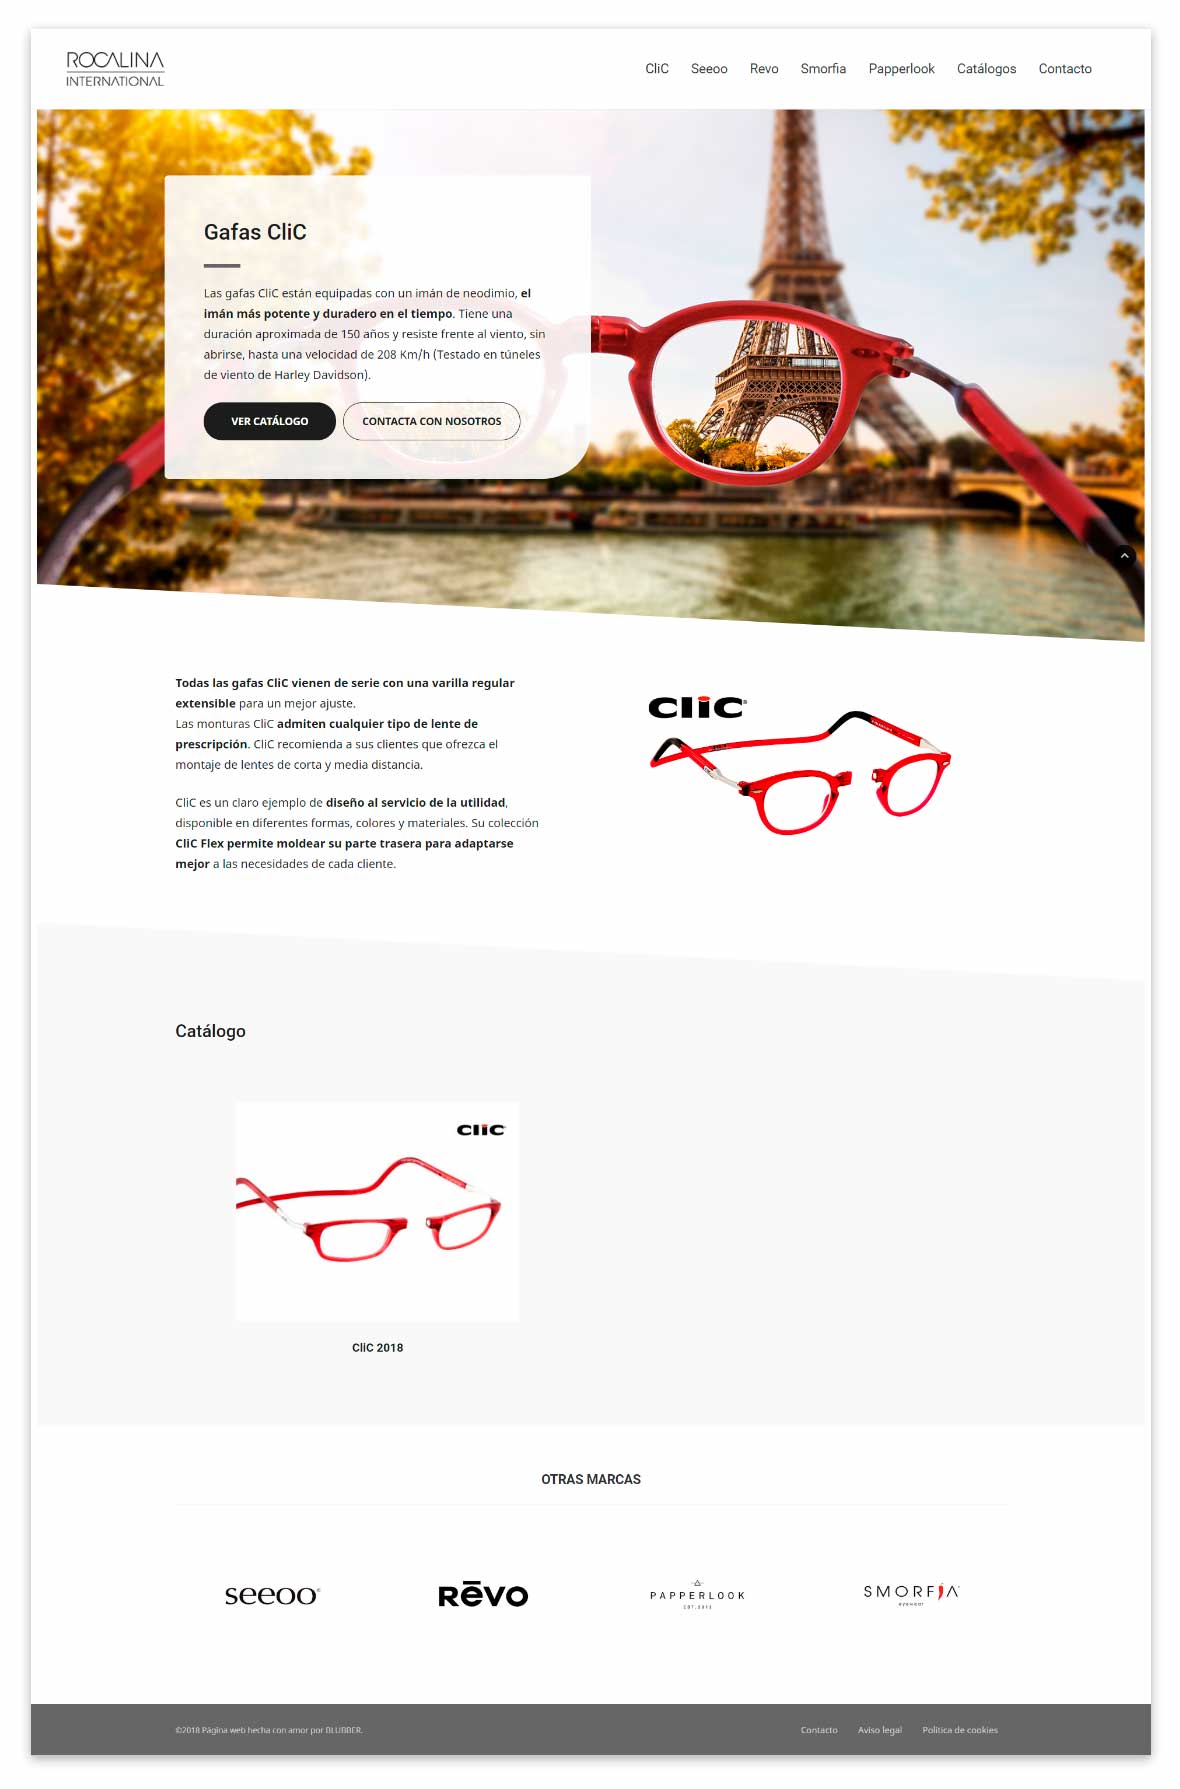 Página web de Rocalina gafas Clic con sistema magnético